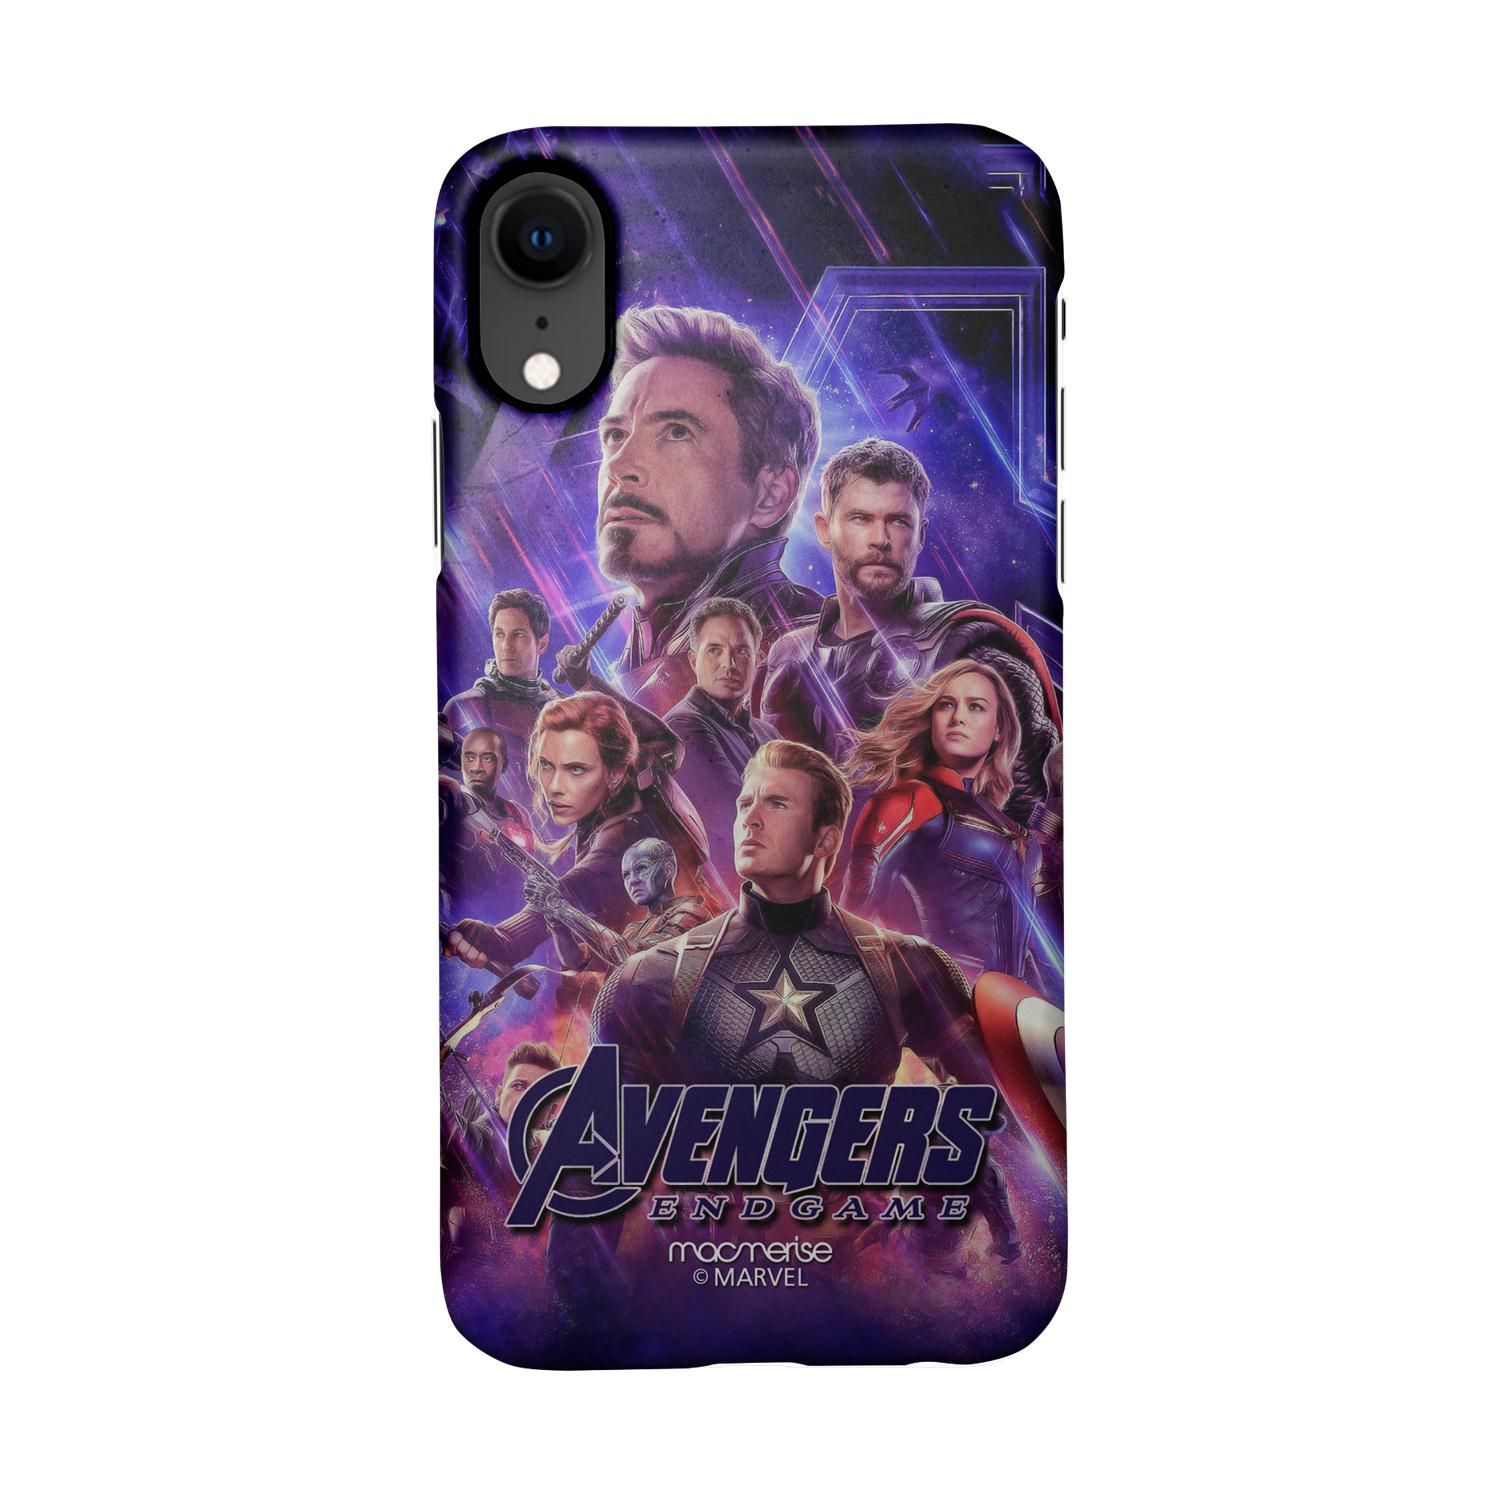 Buy Avengers Endgame Poster - Sleek Phone Case for iPhone XR Online